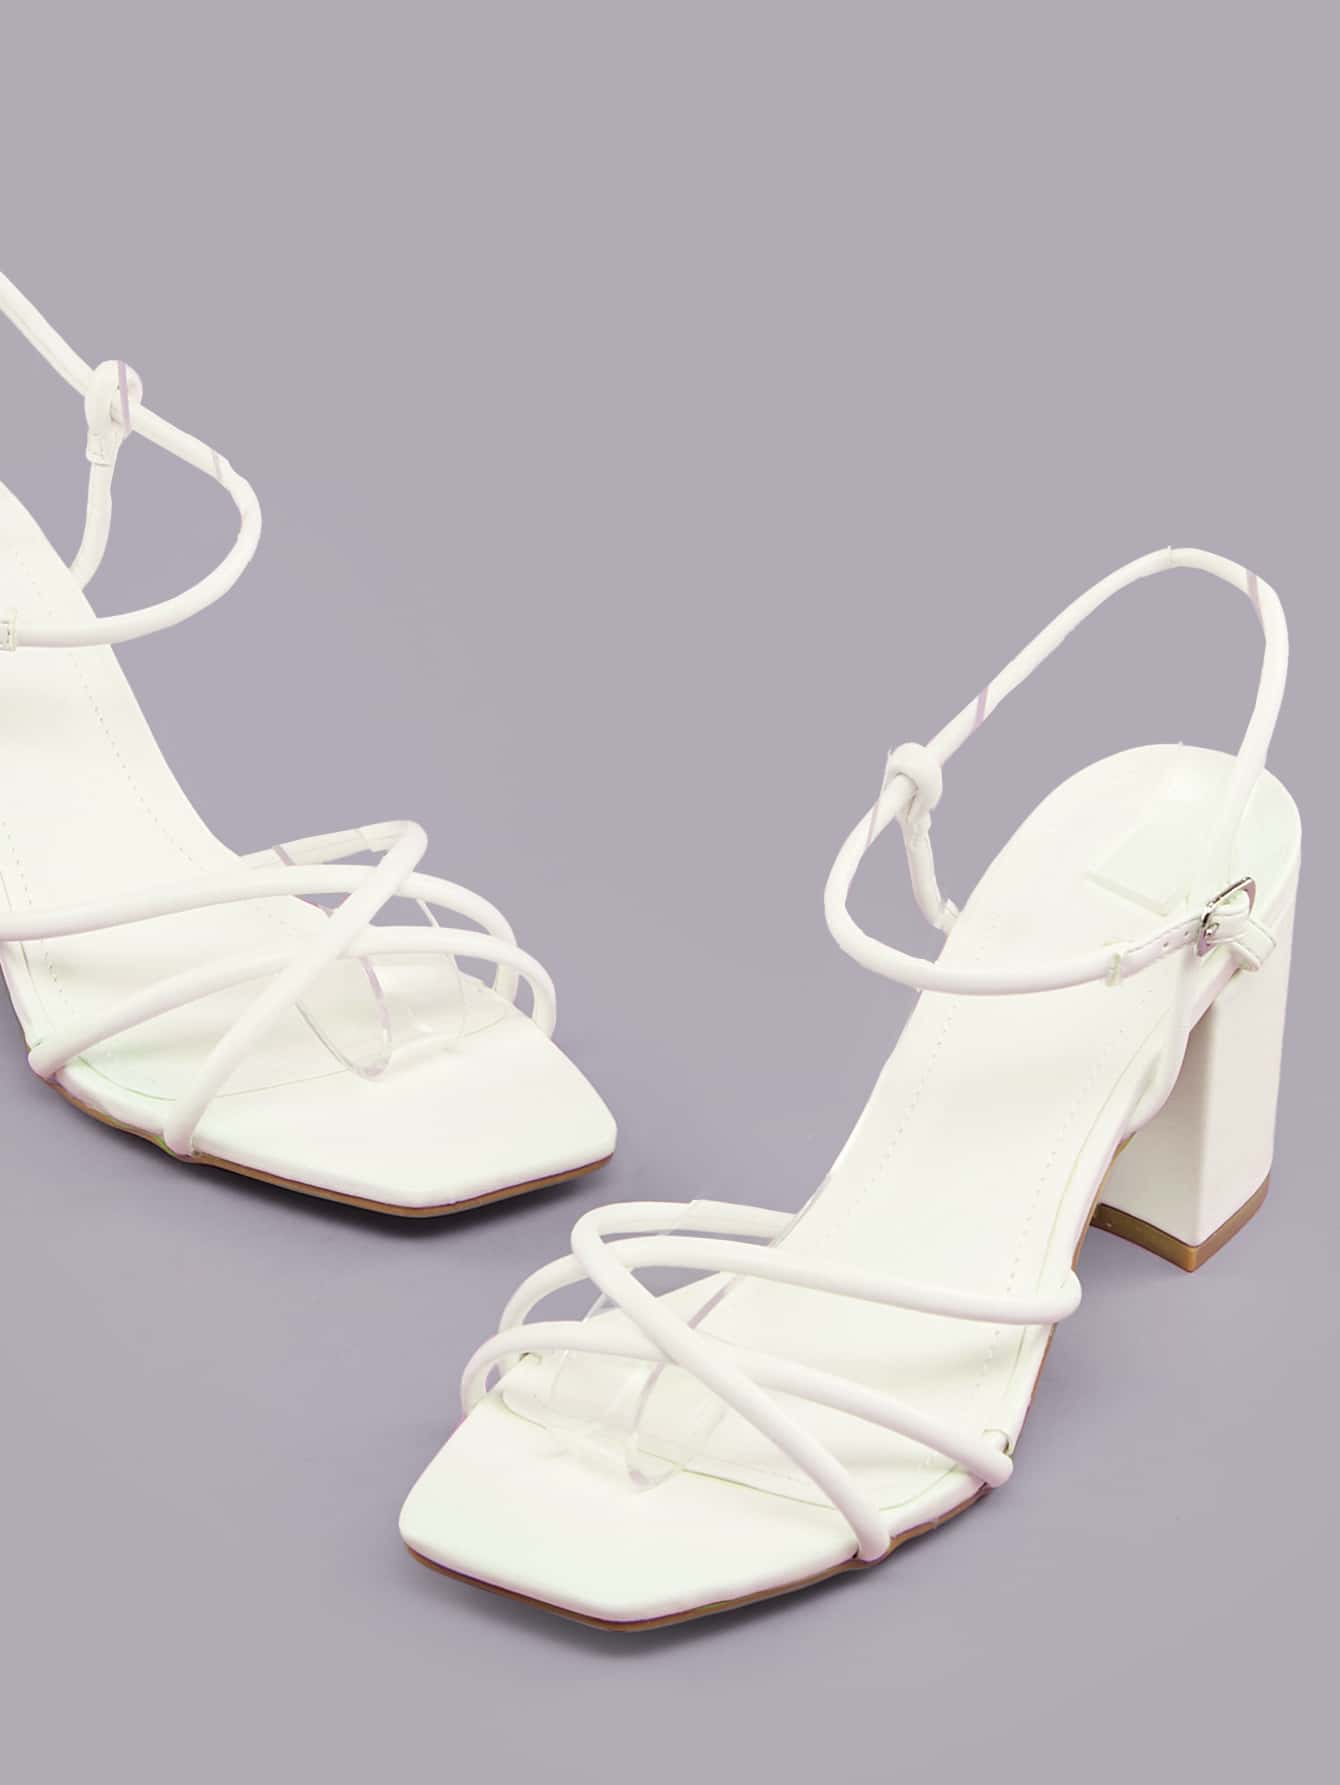 Sandalias minimalistas con correa en el tobillo y tacón grueso para mujer, elegantes sandalias de tacón de verano 